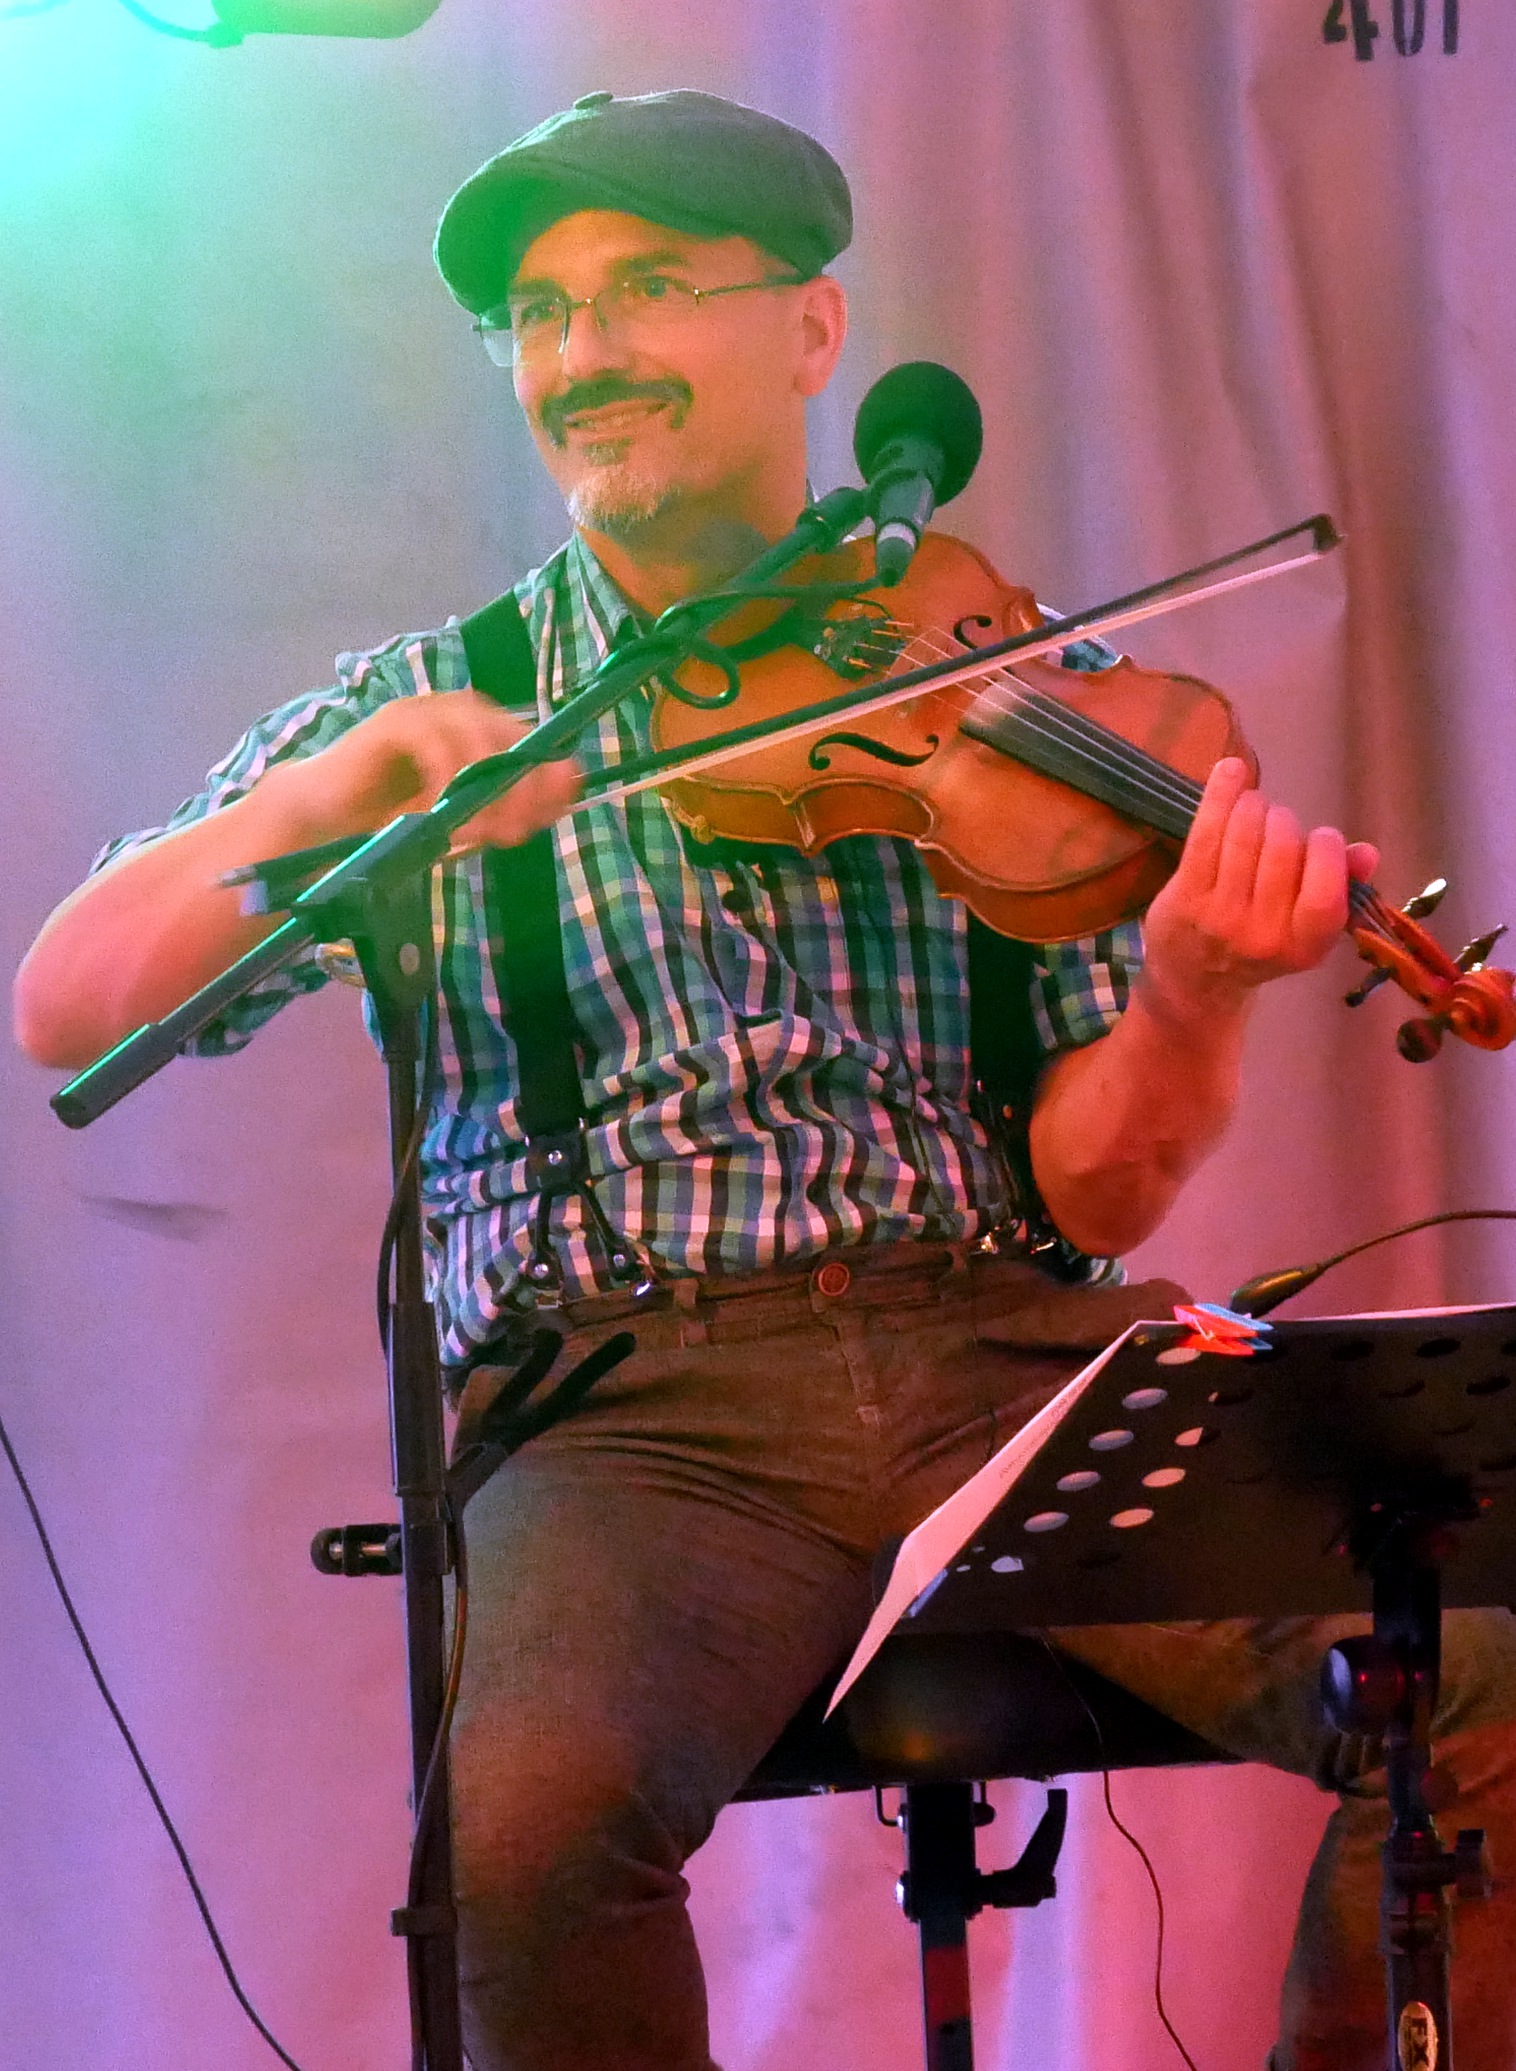 Gerry the fiddler